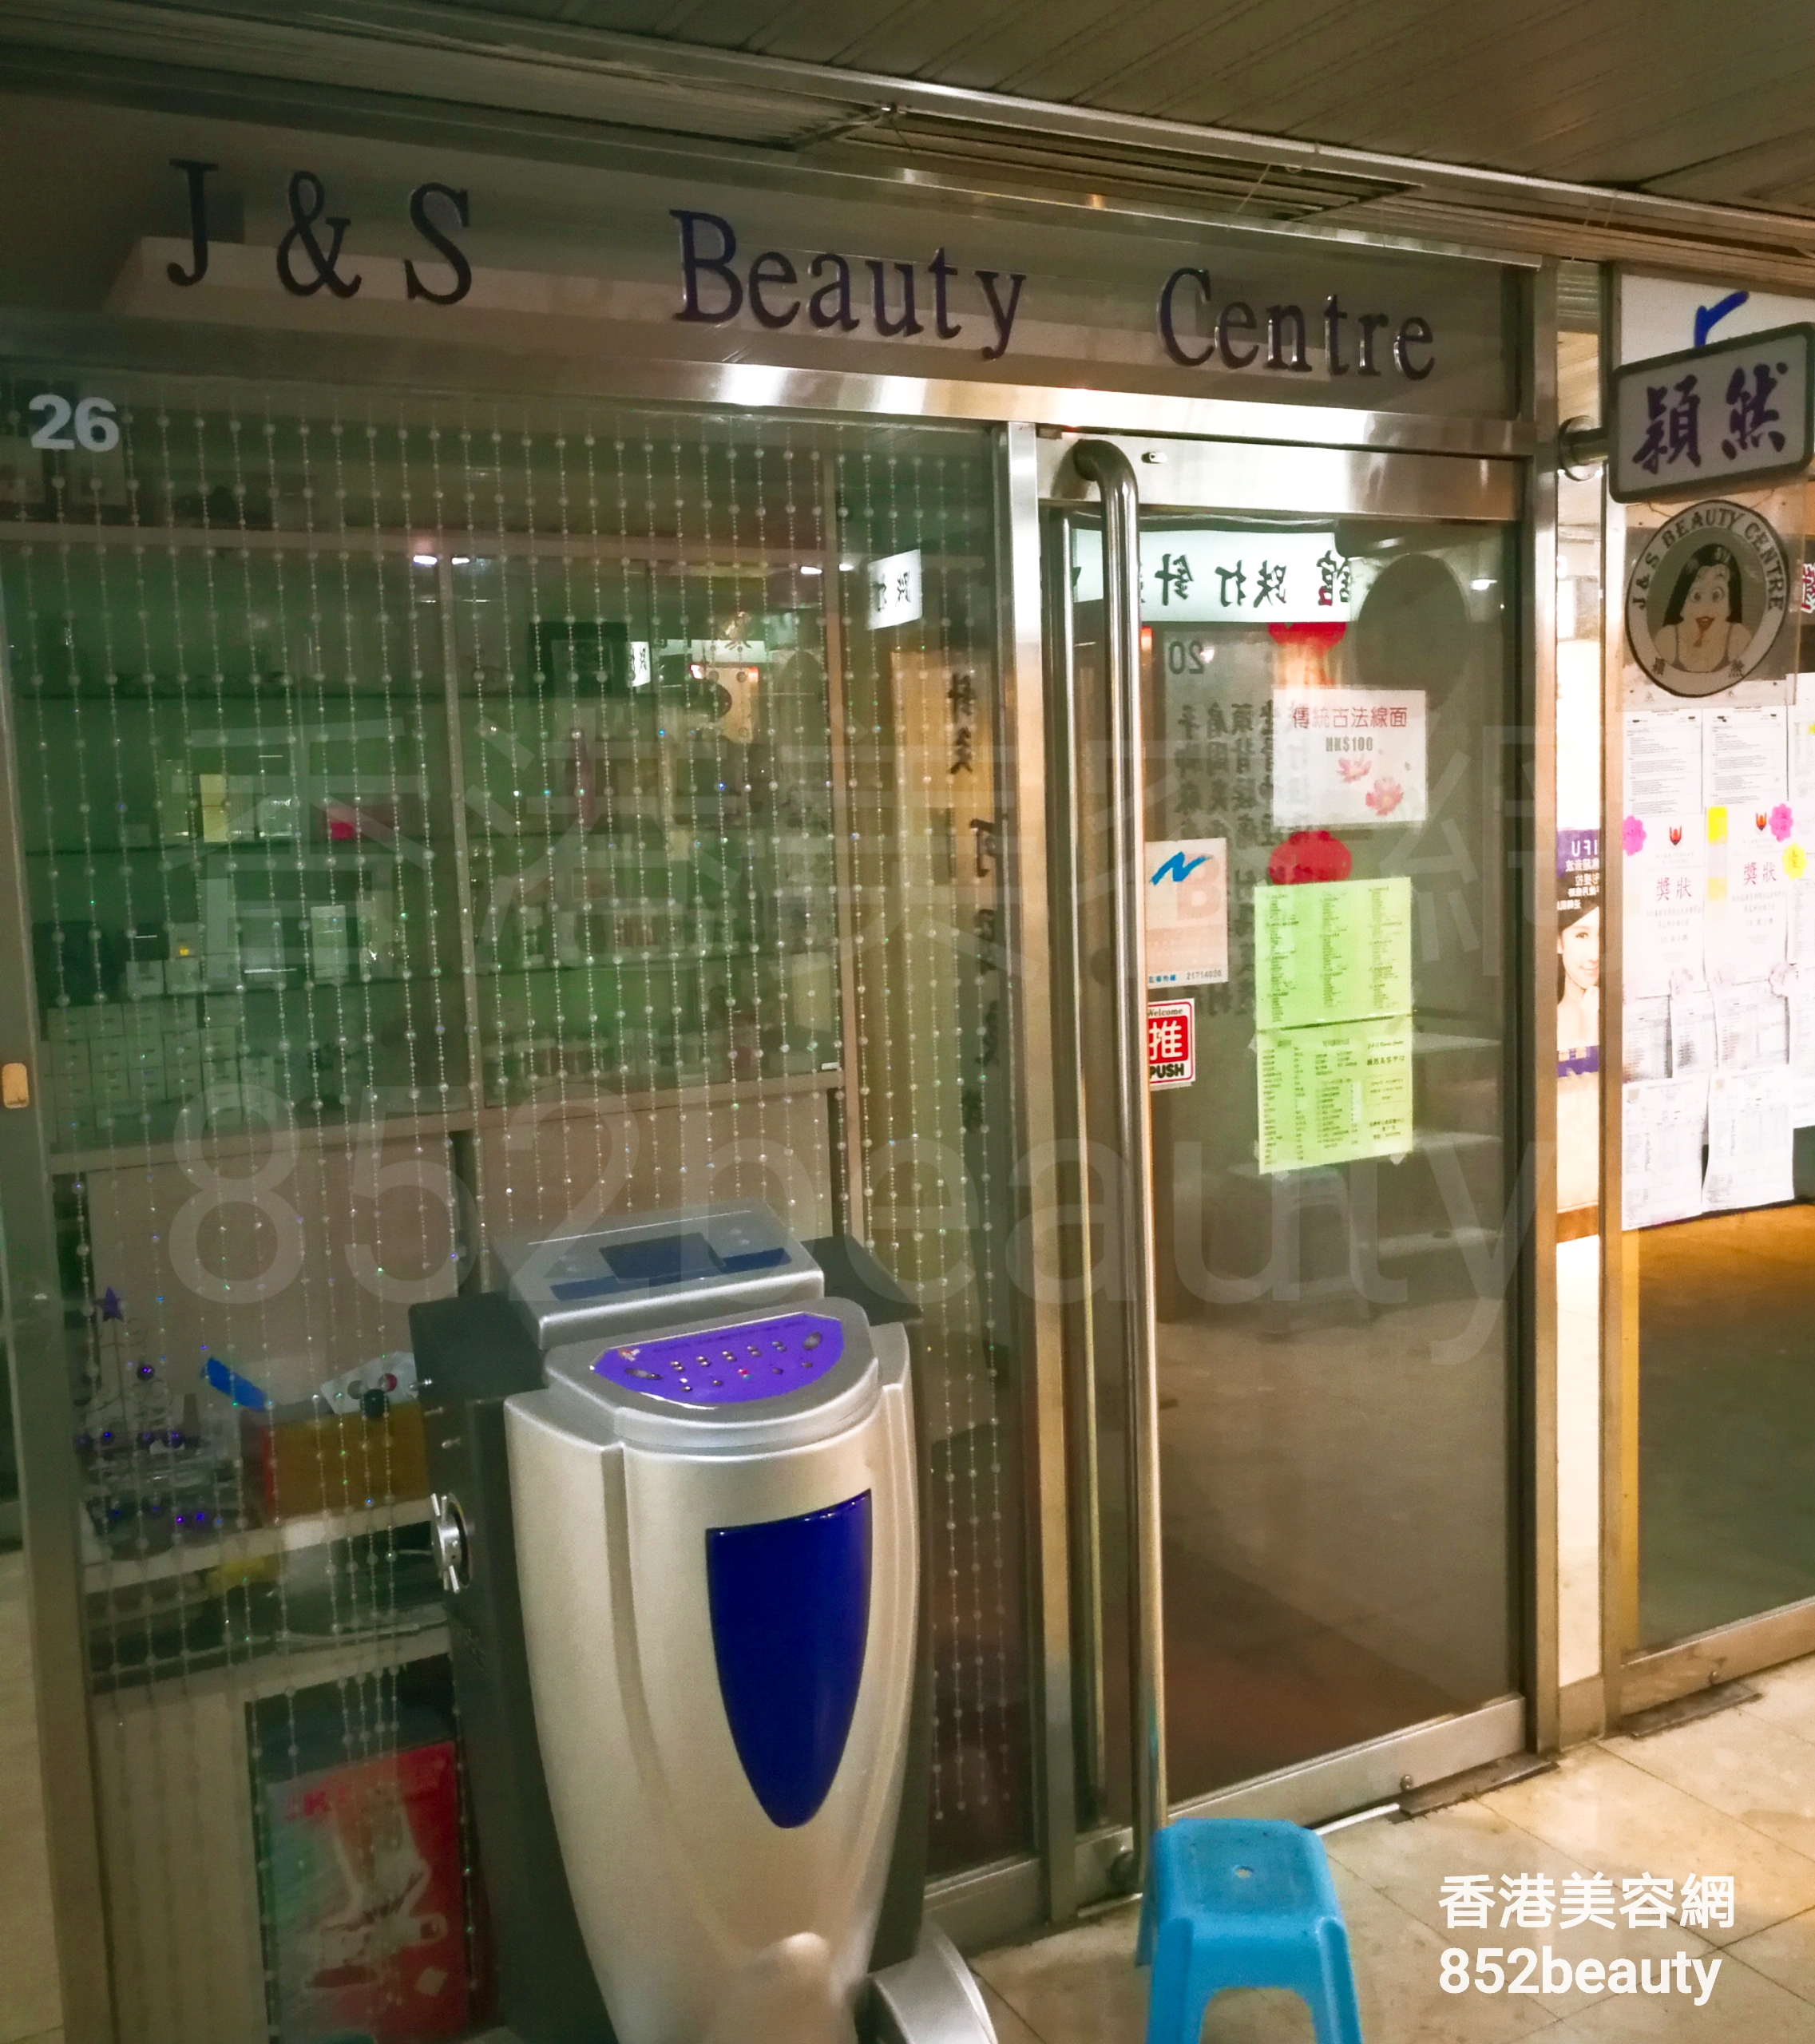 美容院: J&S Beauty Centre 穎然美容中心